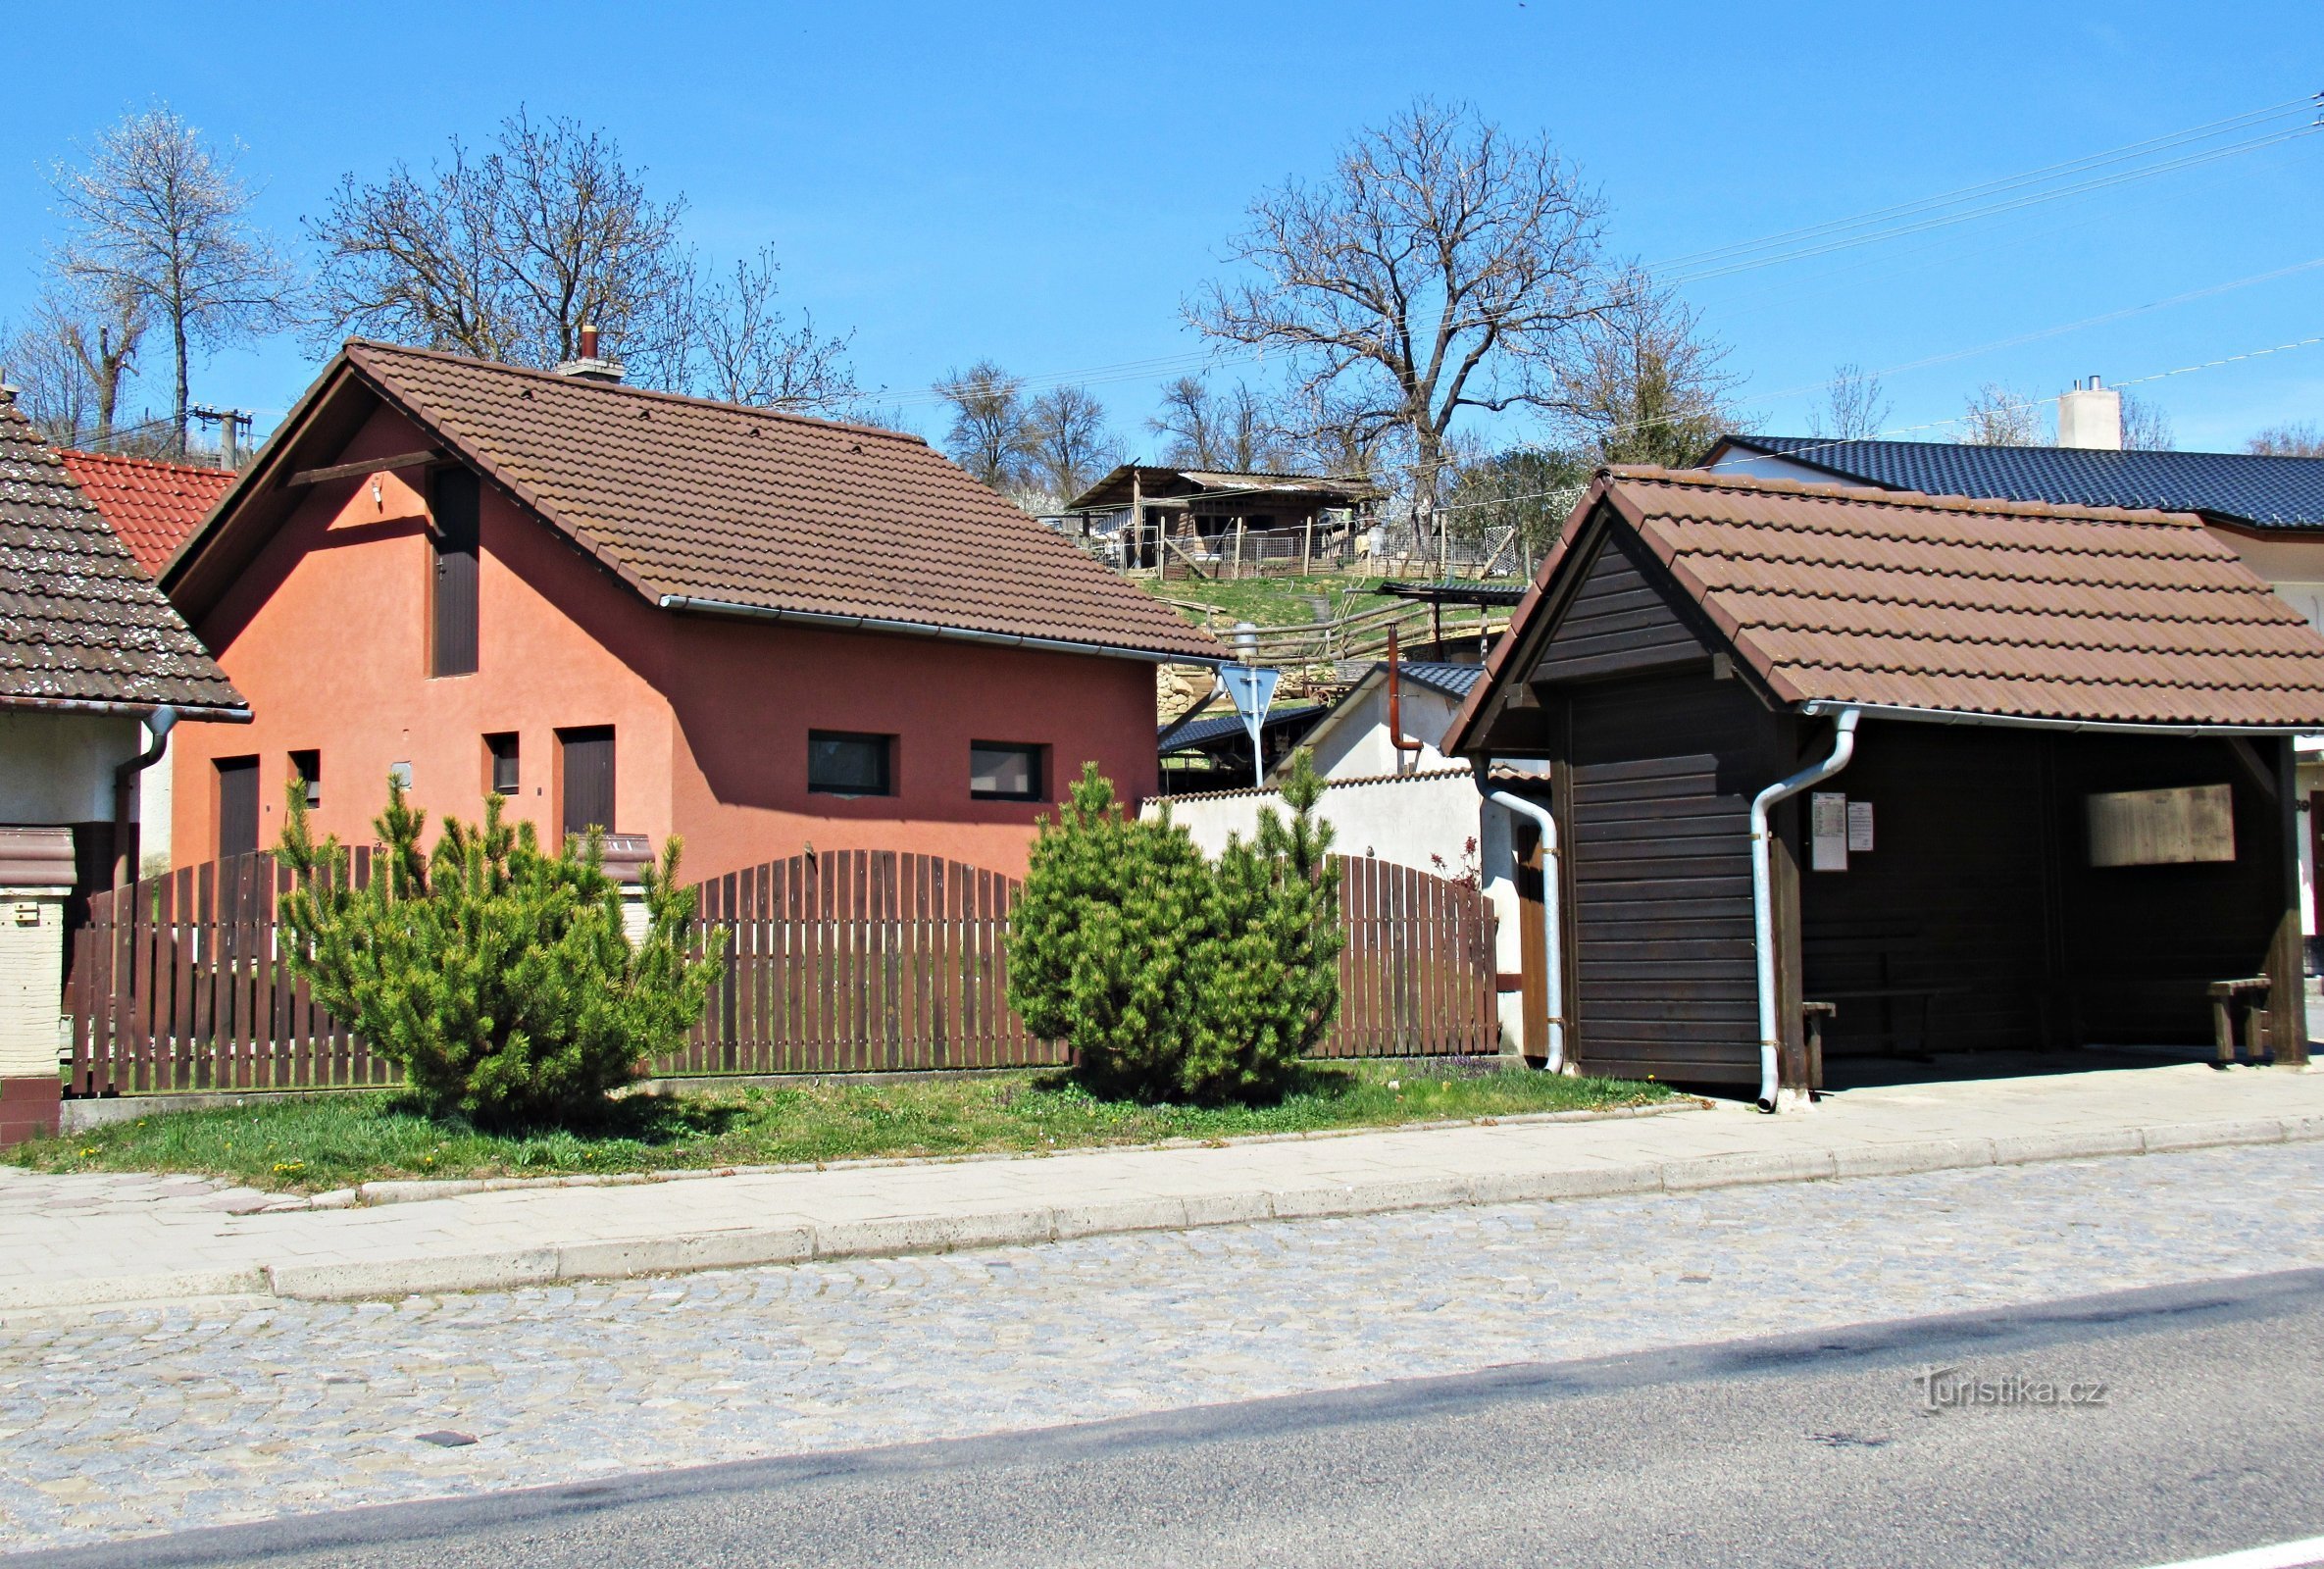 Stříbrnice, obec ležící na Slovácku a výhledy nad obcí